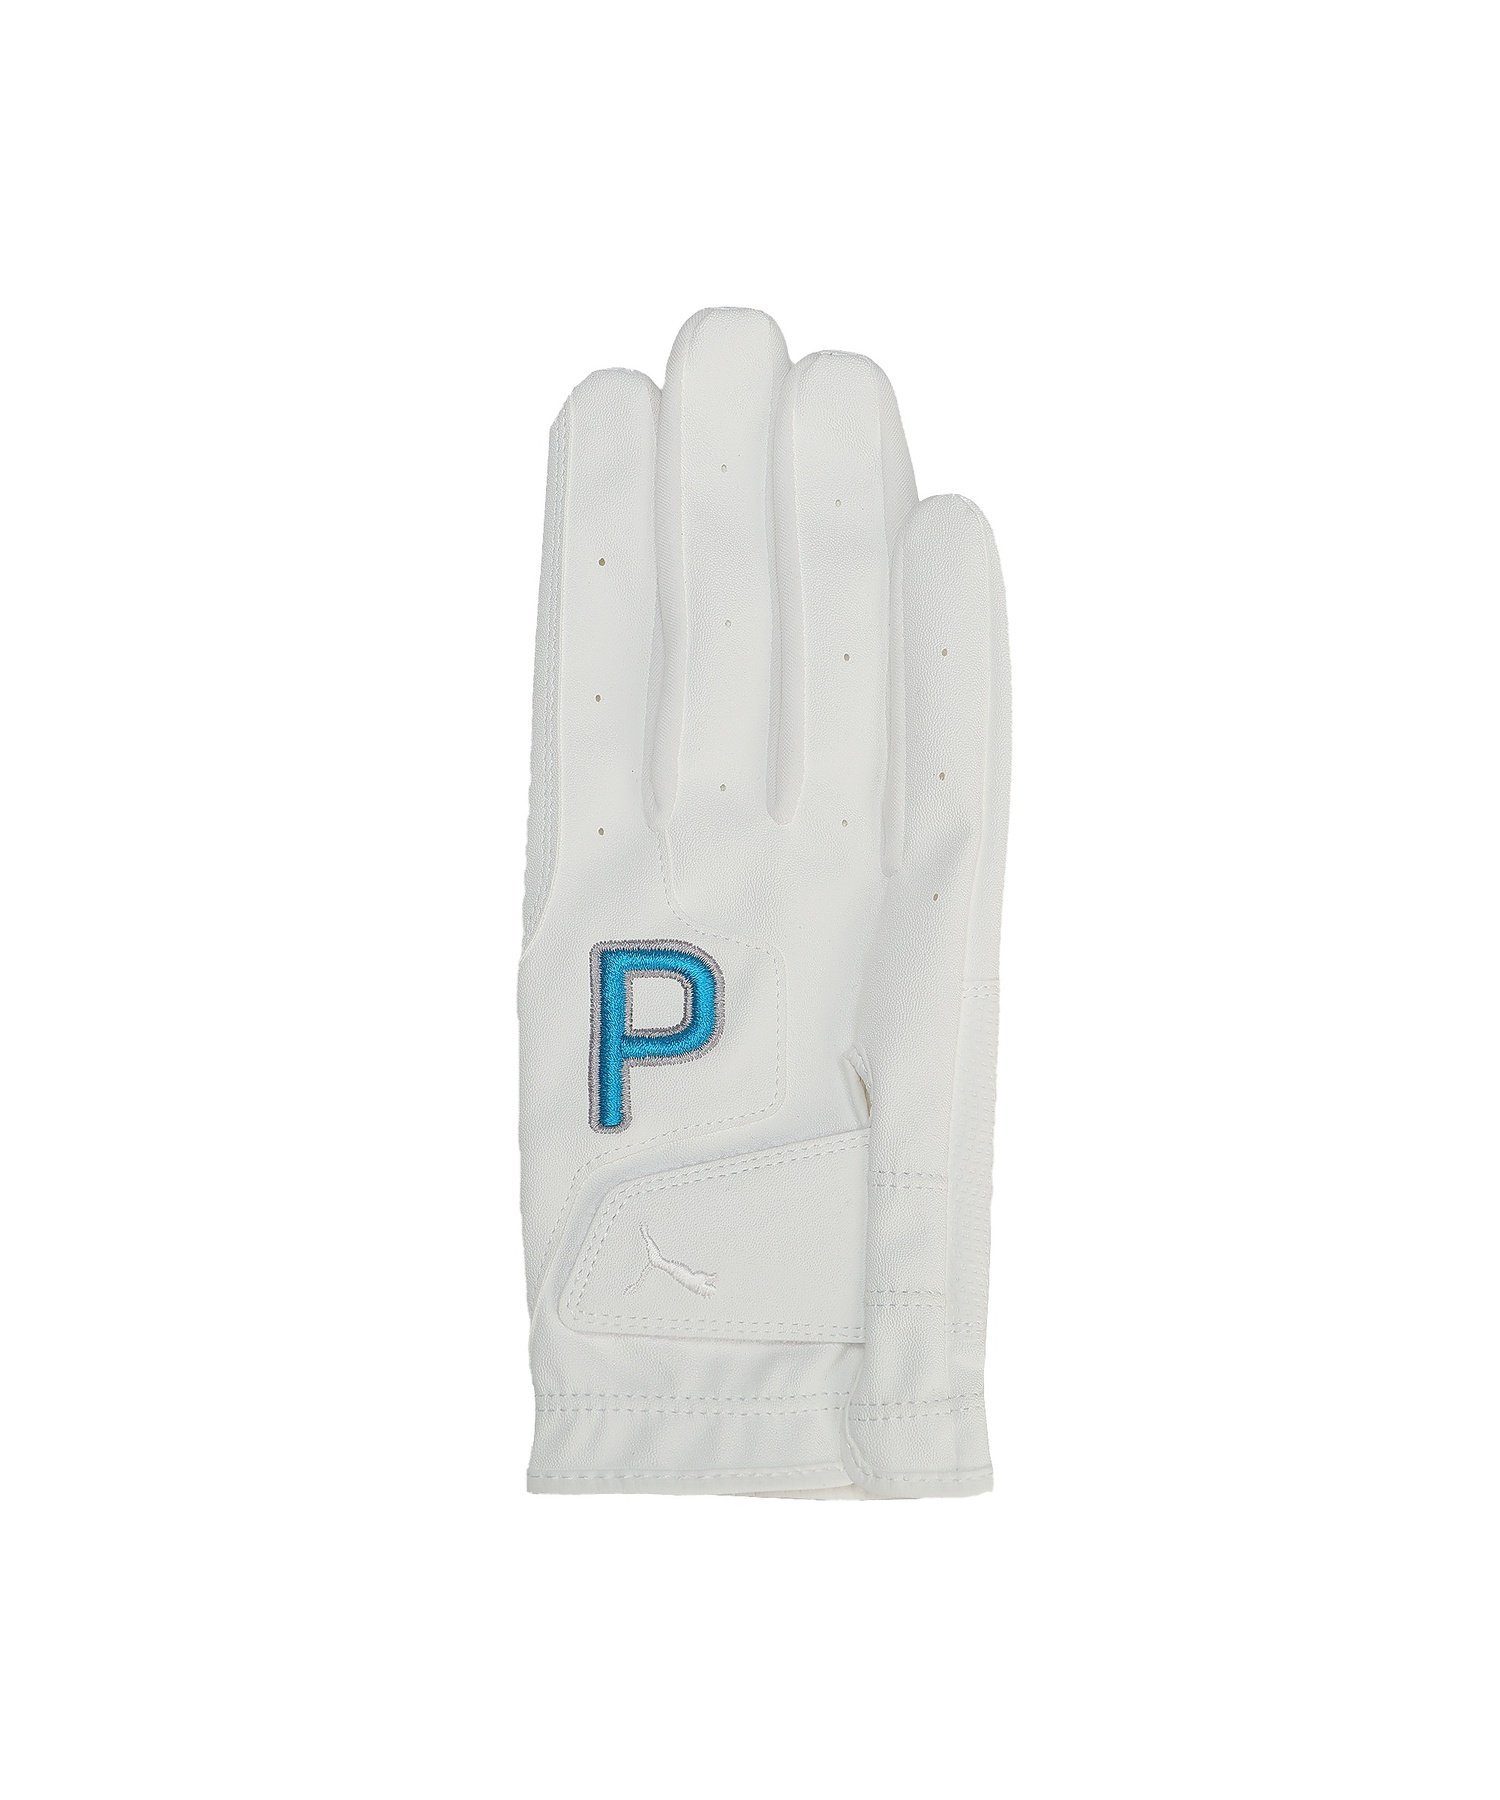 PUMA メンズ ゴルフ P グローブ 右手用 プーマ スポーツ・アウトドア用品 その他のスポーツ・アウトドア用品